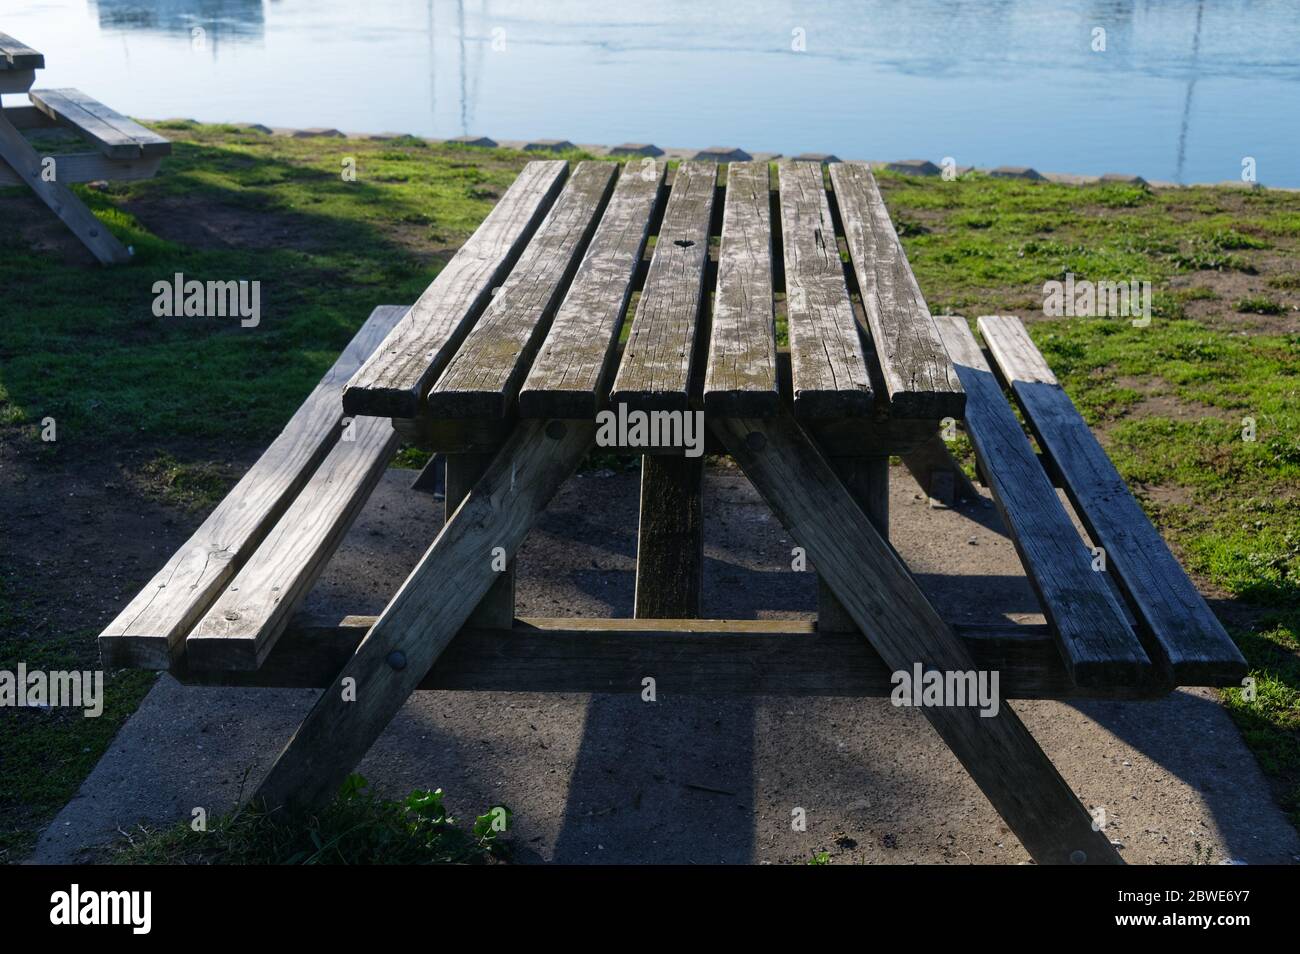 Un ottimo posto per un picnic, un tavolo di legno con panchine si trova di fronte al mare Foto Stock